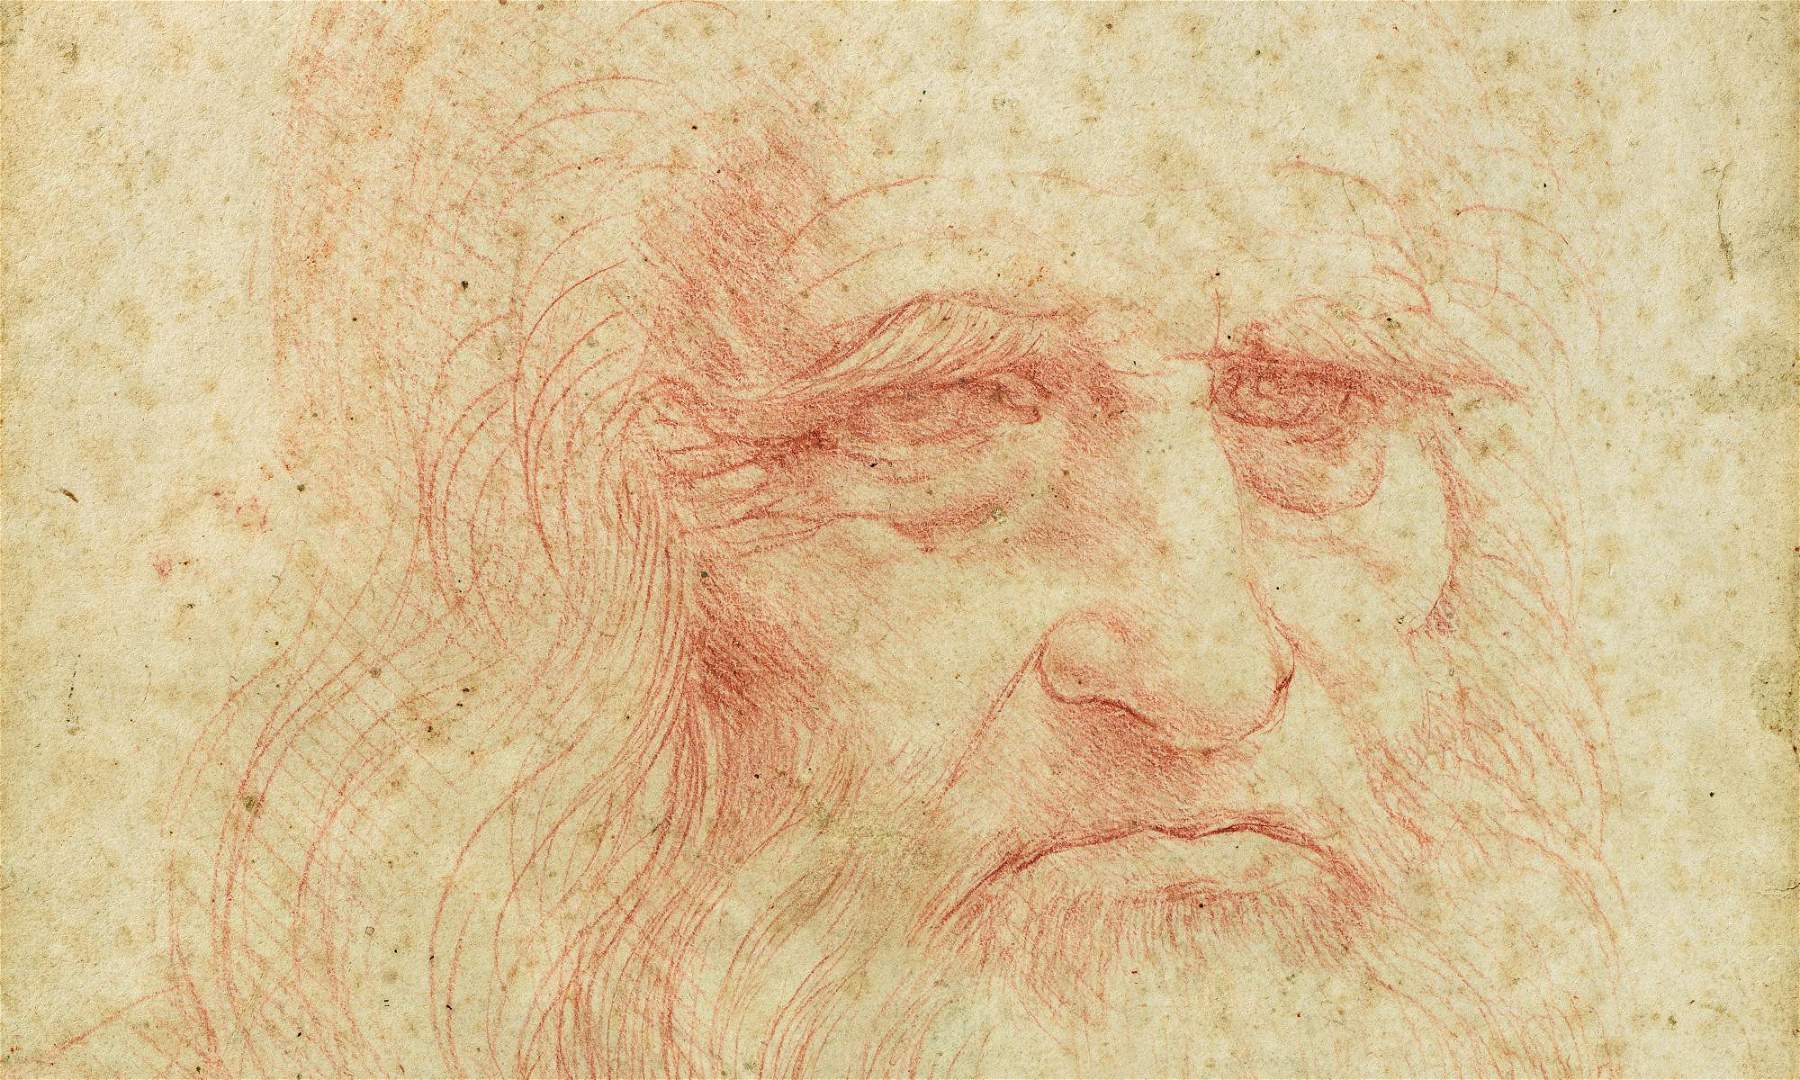 Turin célèbre Léonard de Vinci avec une exposition de plus de cinquante dessins, dont certains chefs-d'œuvre.